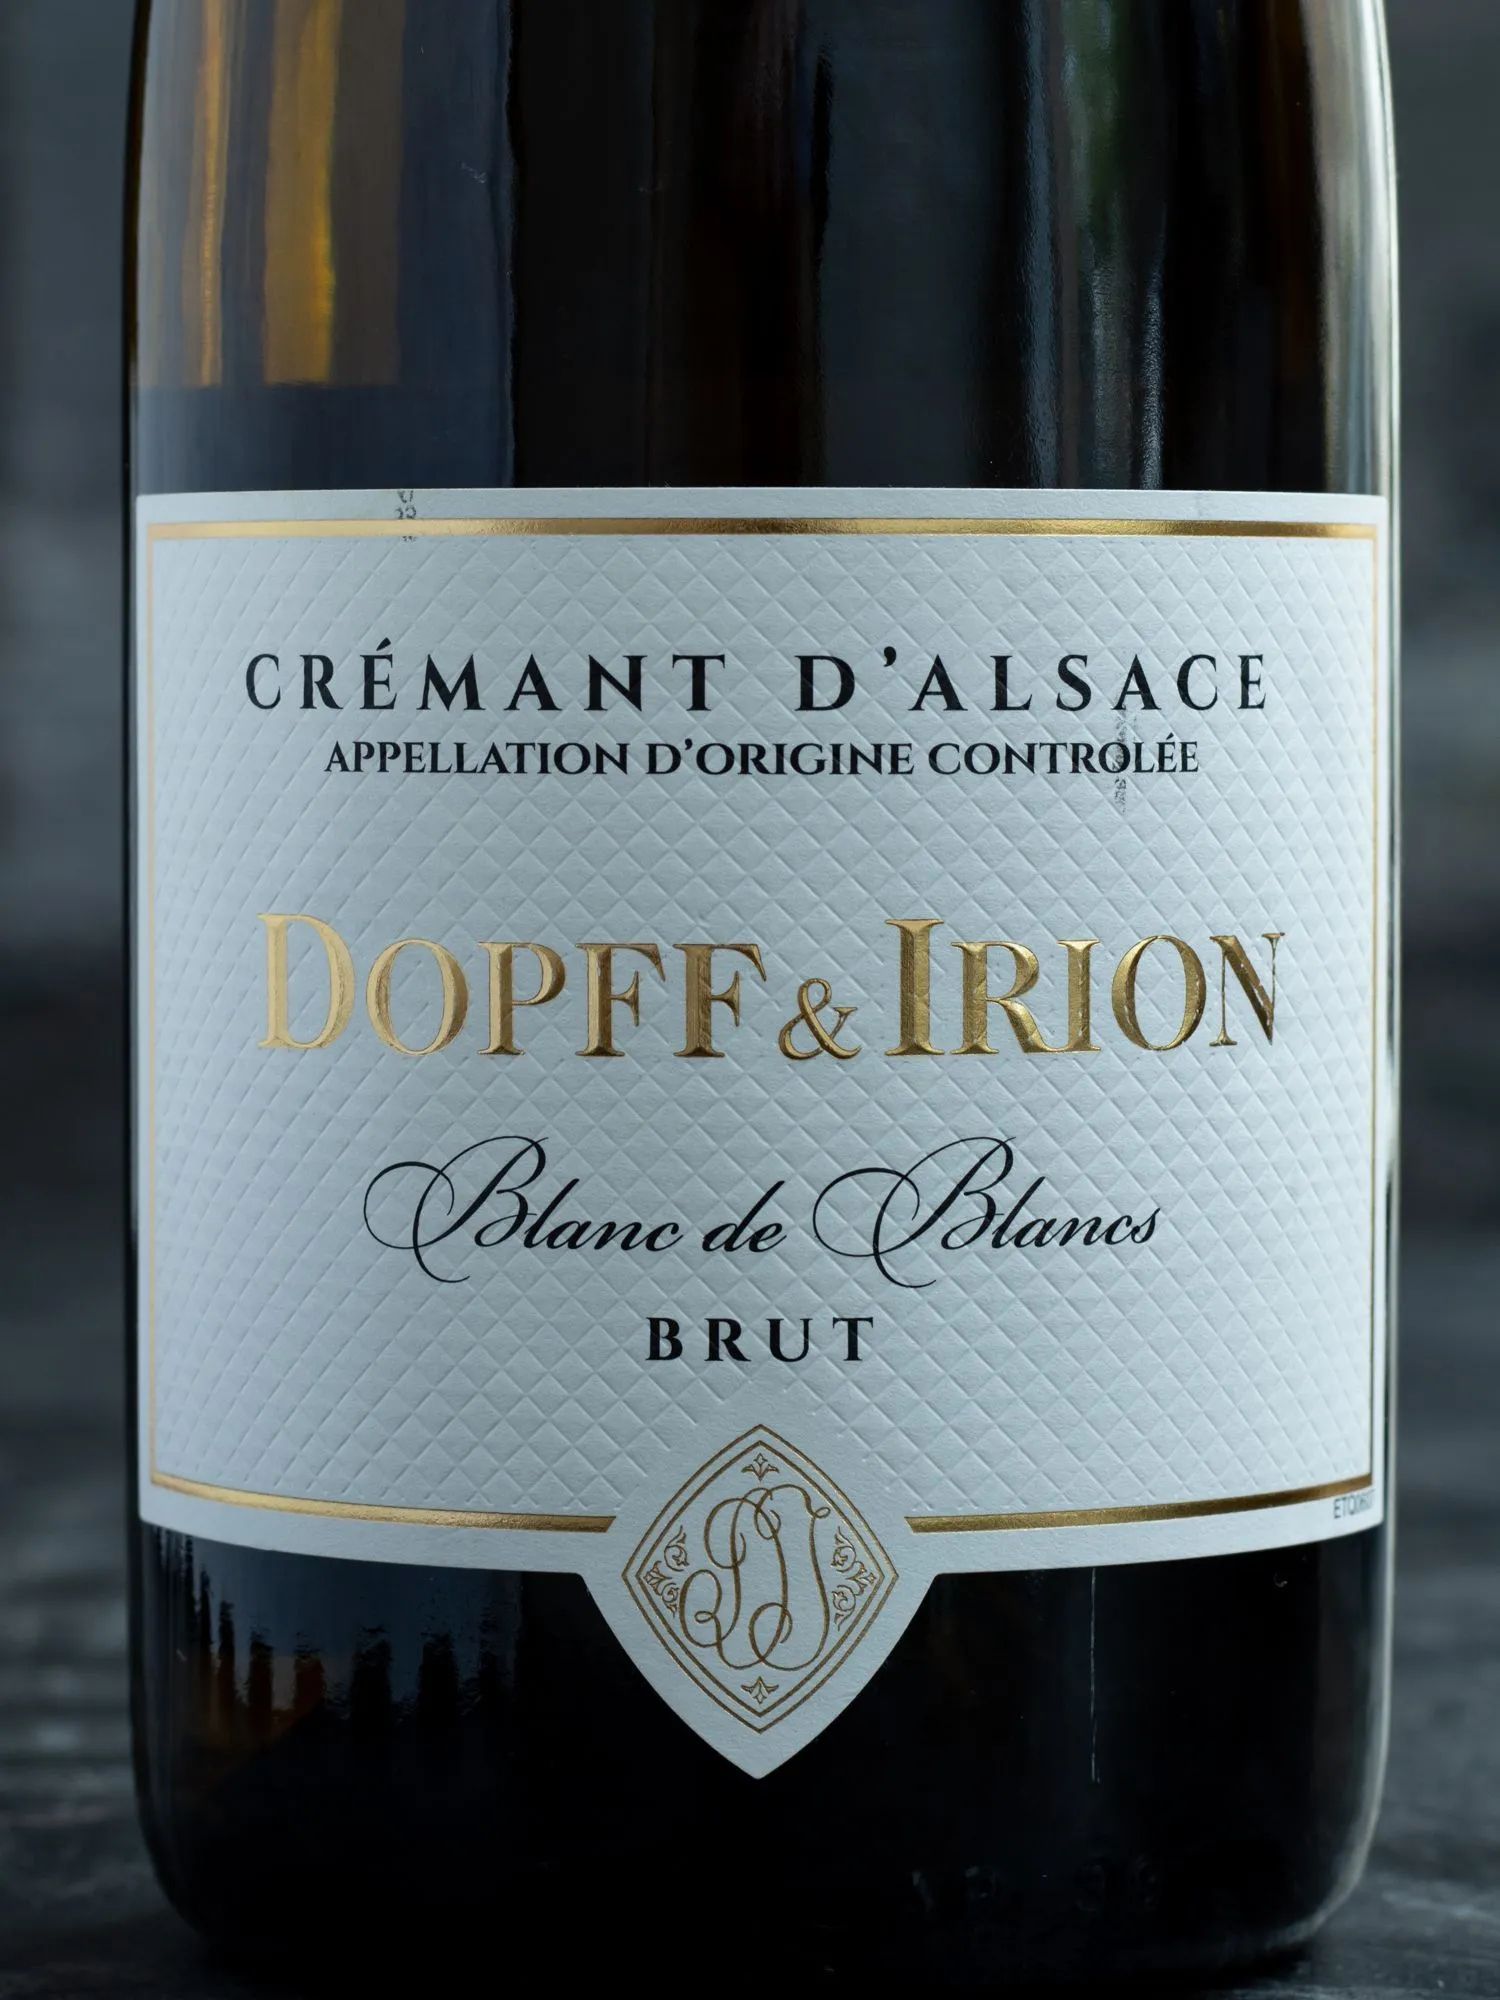 Игристое вино Dopff & Irion Cremant d'Alsace Brut Blanc de Blanc / Допф энд Ирион Креман д'Эльзас Брют Блан де Блан